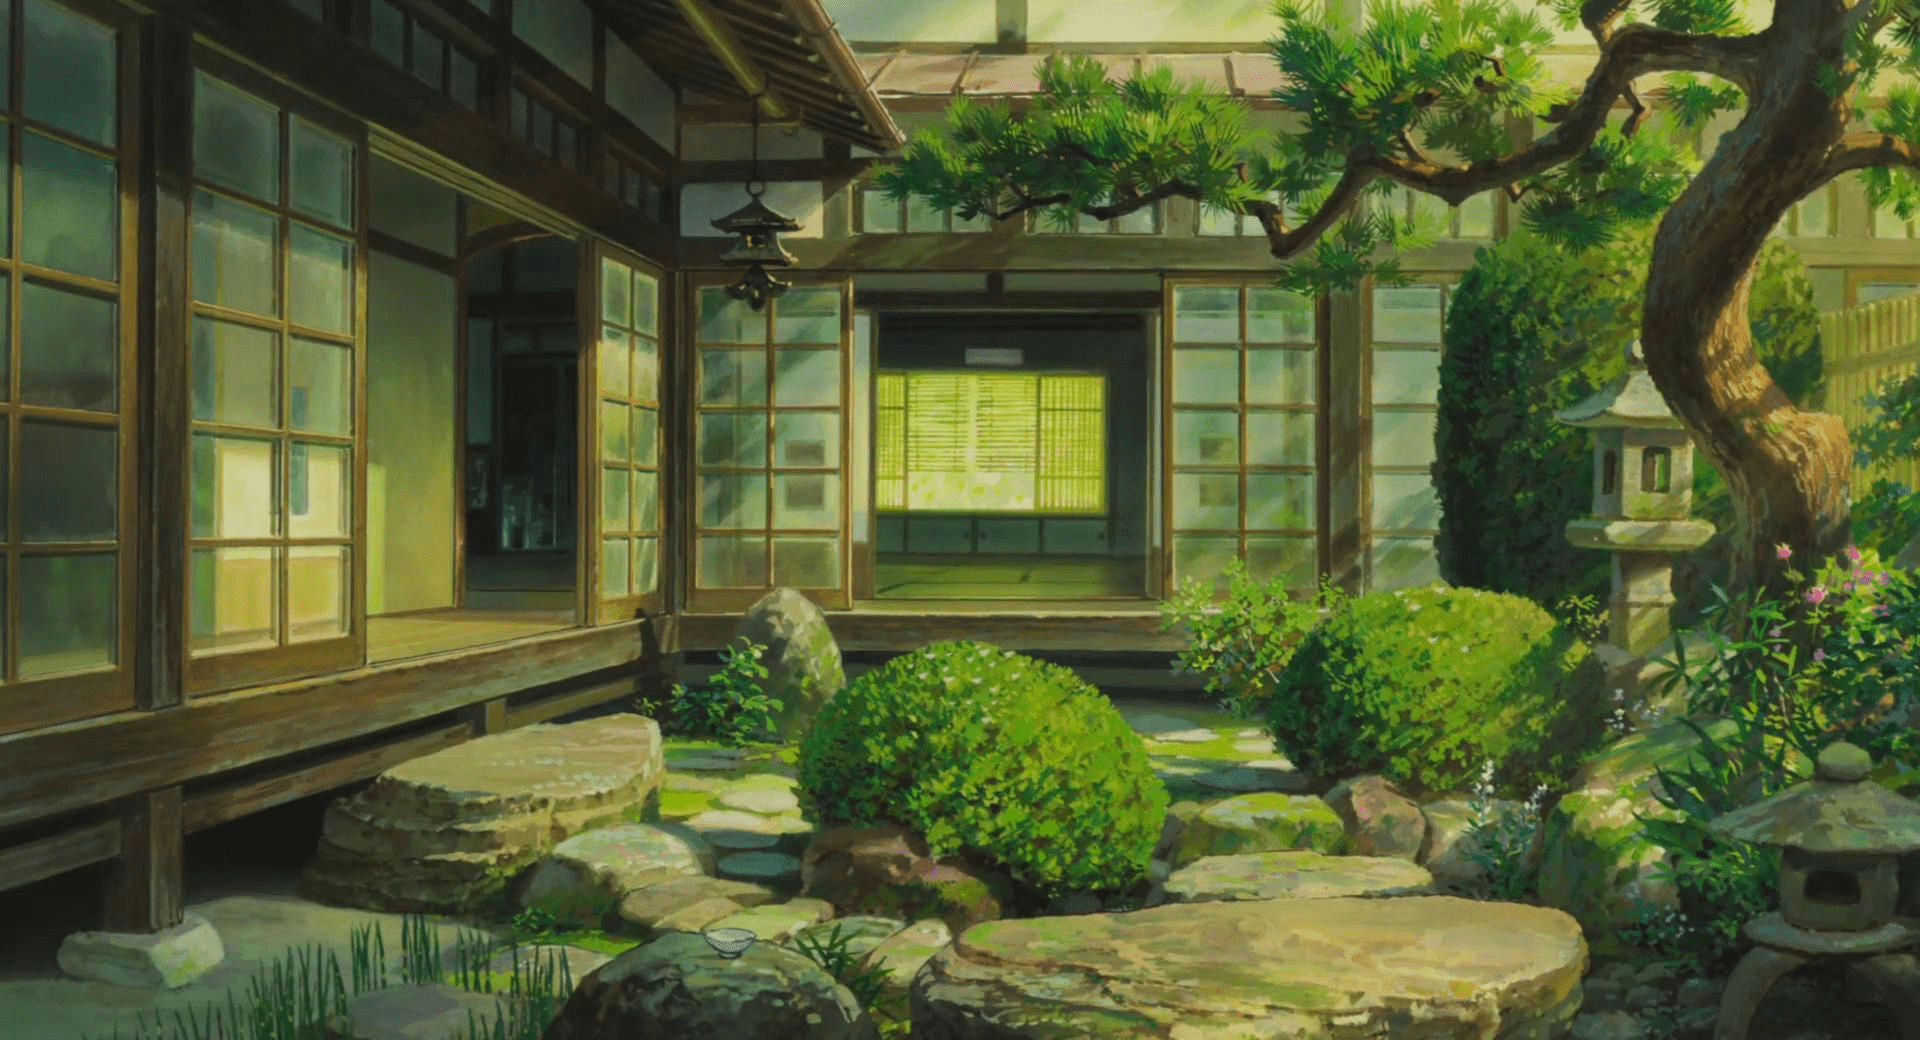 Studio Ghibli When The Wind Rises